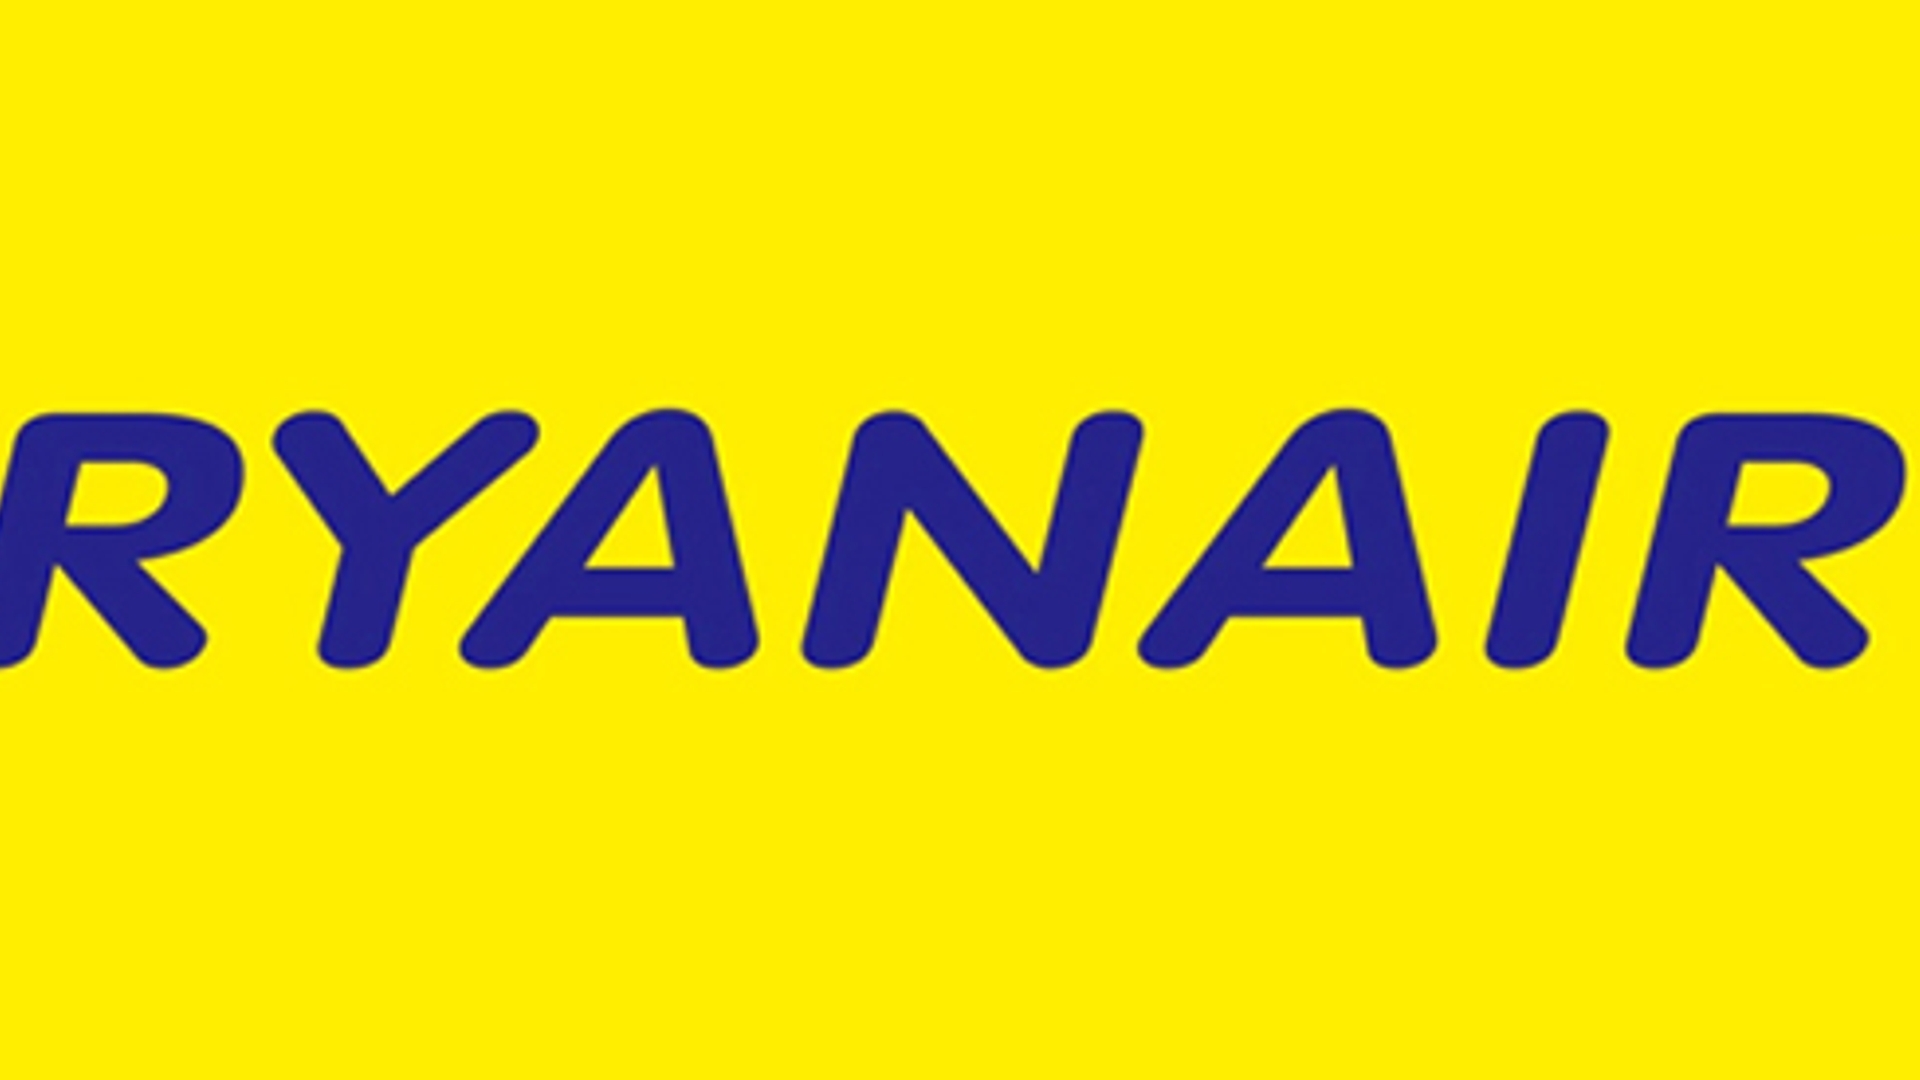 Ryanair_06.jpg